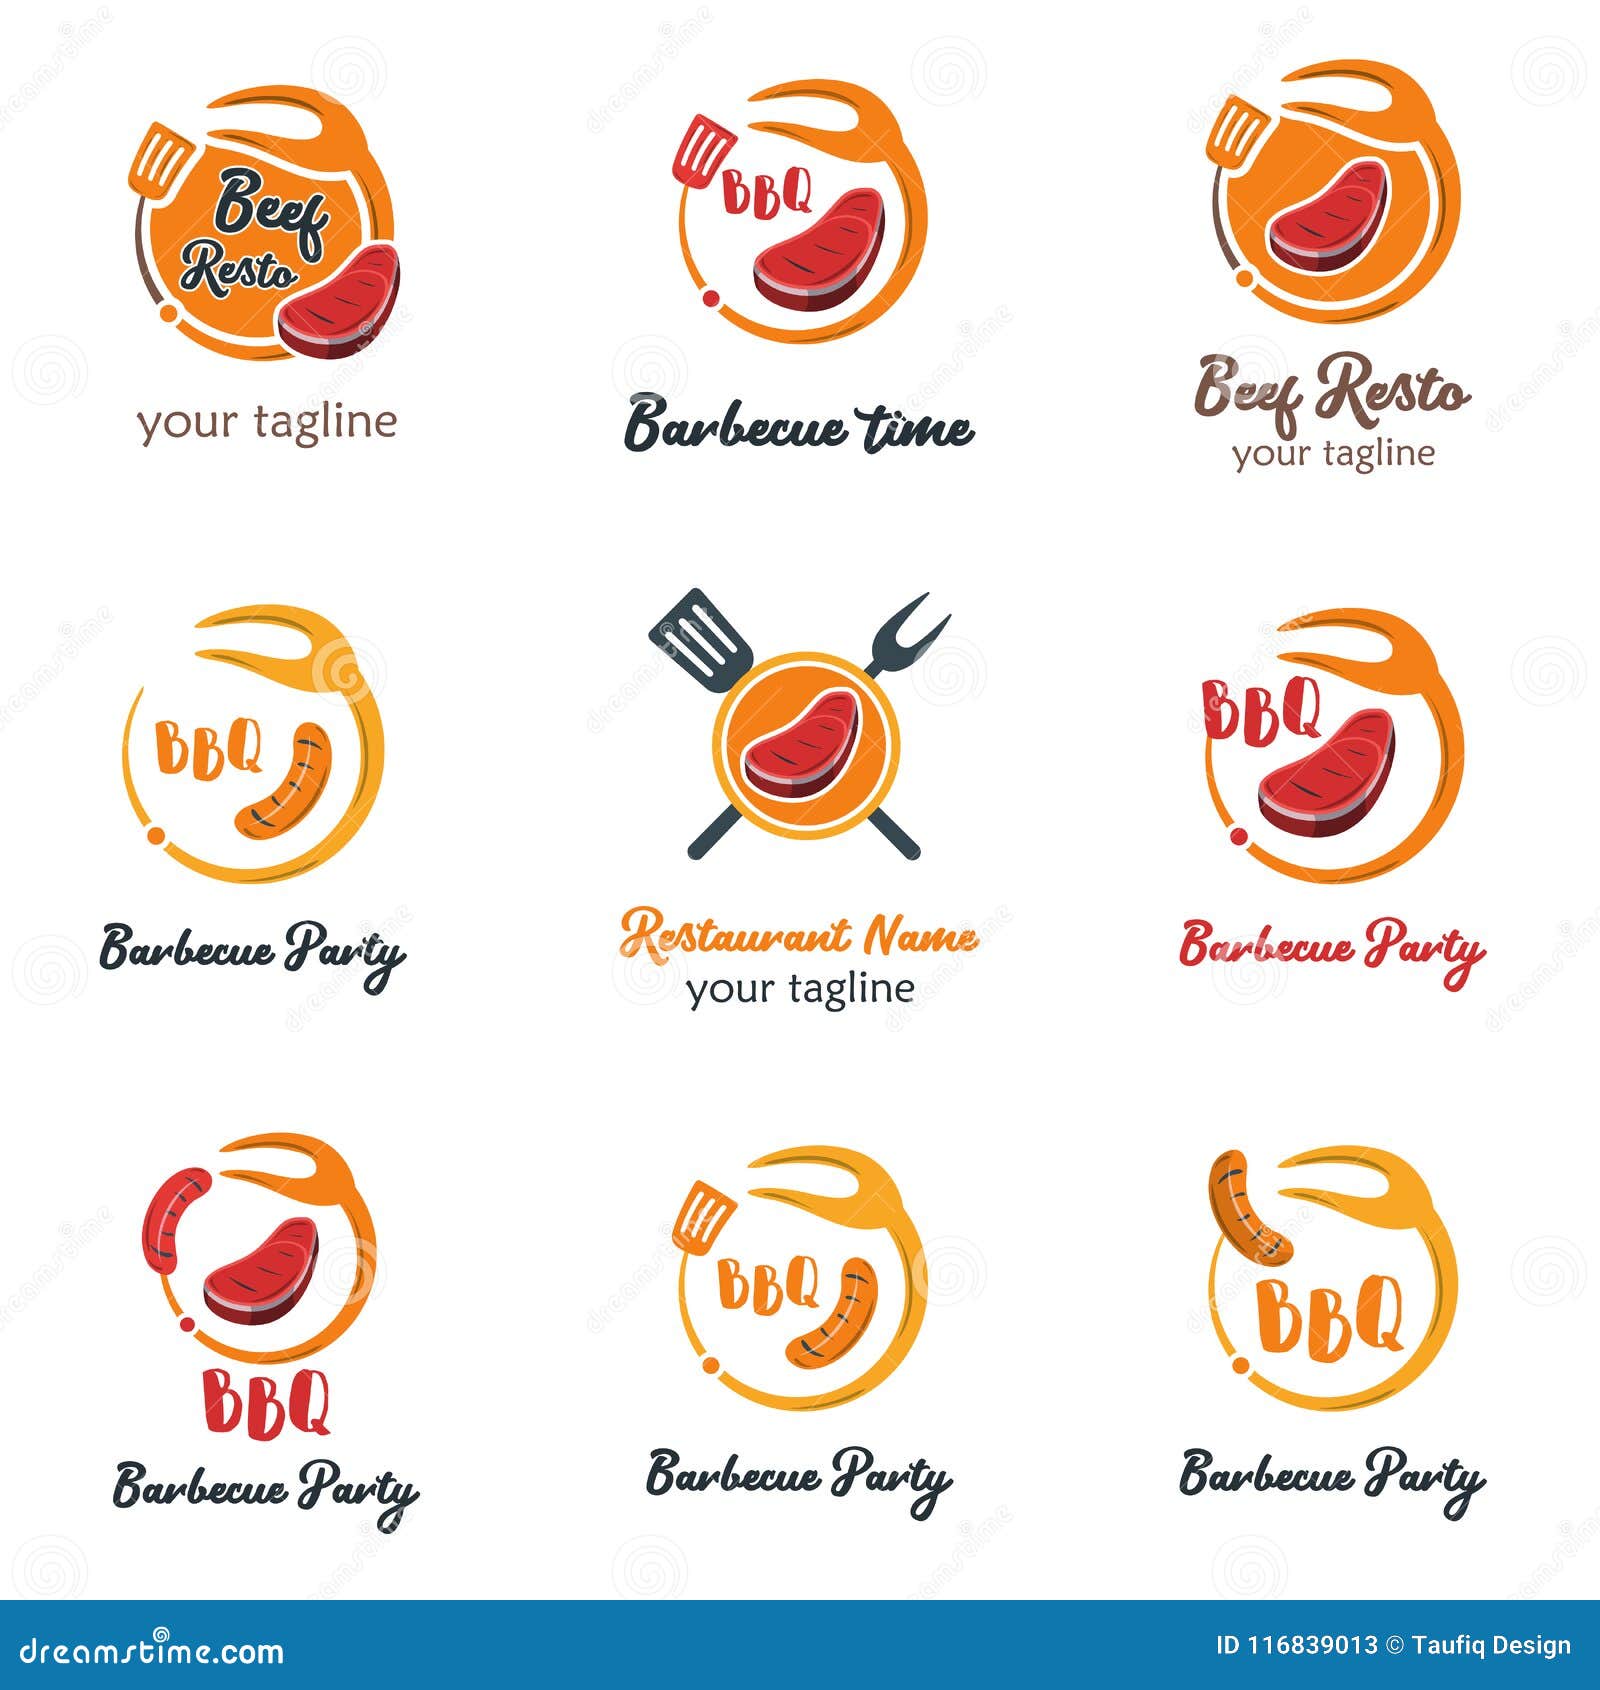 Food Logo Ideas